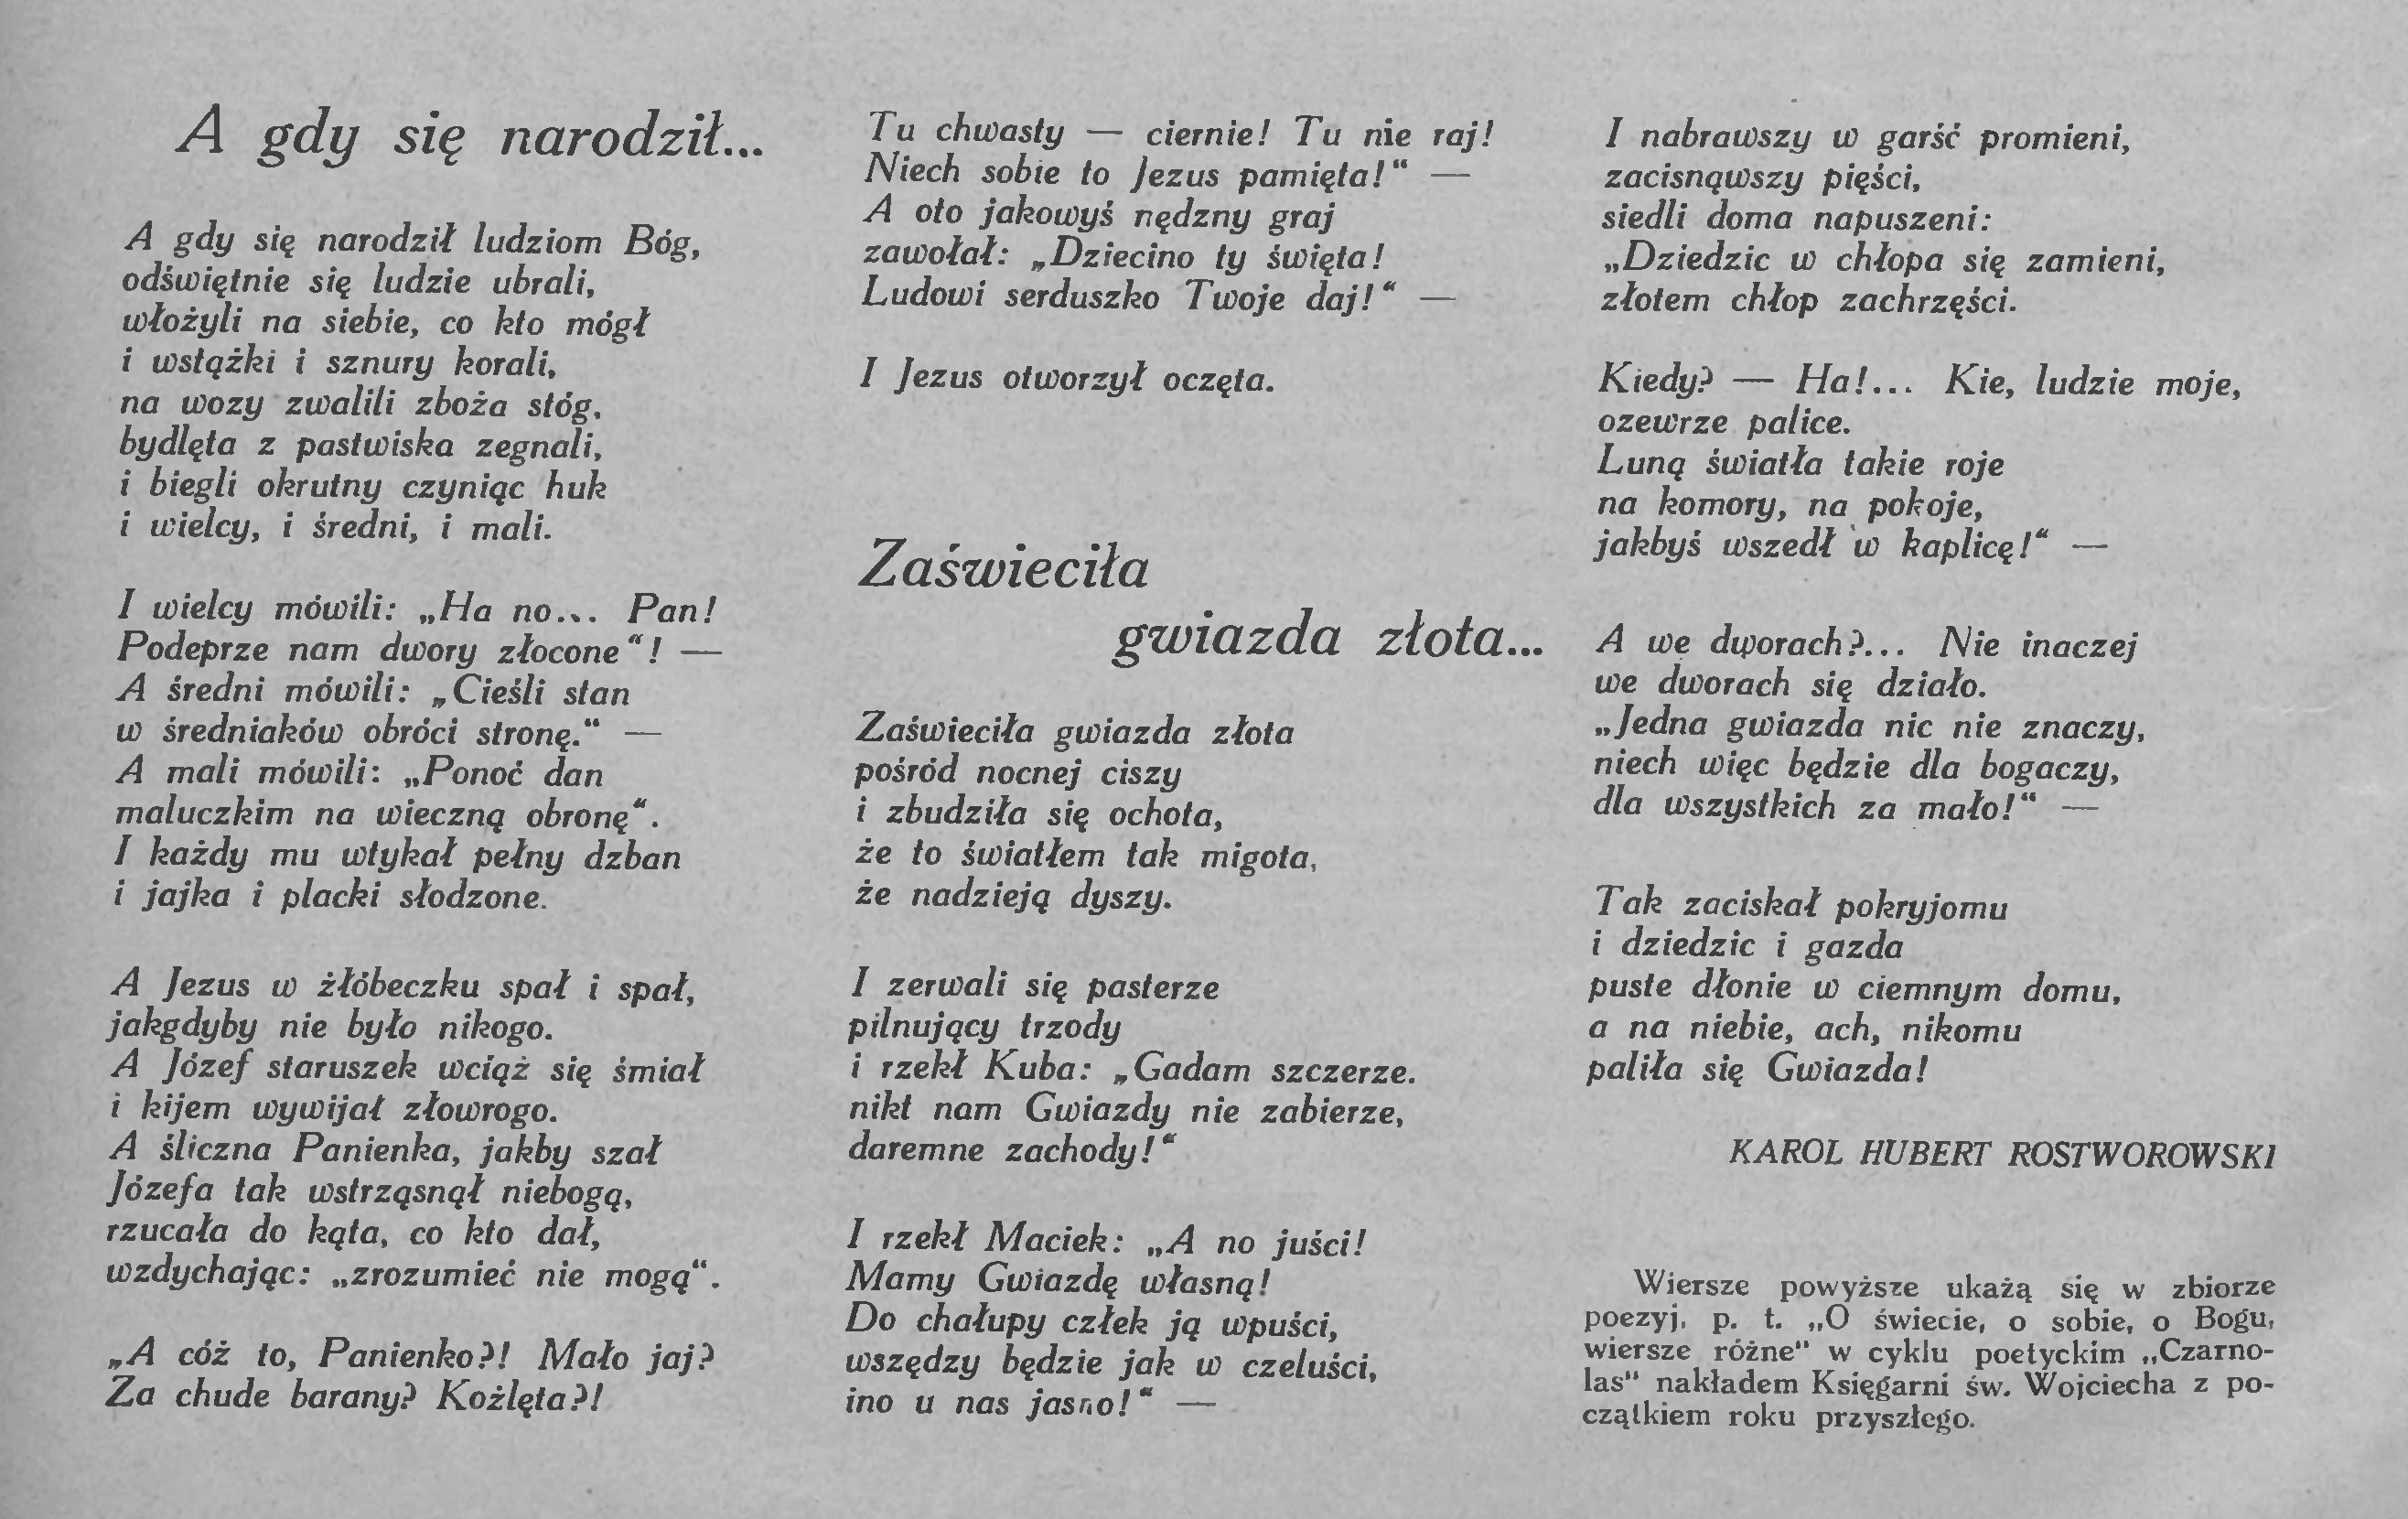 Karol Hubert Roztworowski, "A gdy się narodził", "Zaświeciła gwiazda złota...", 1930.